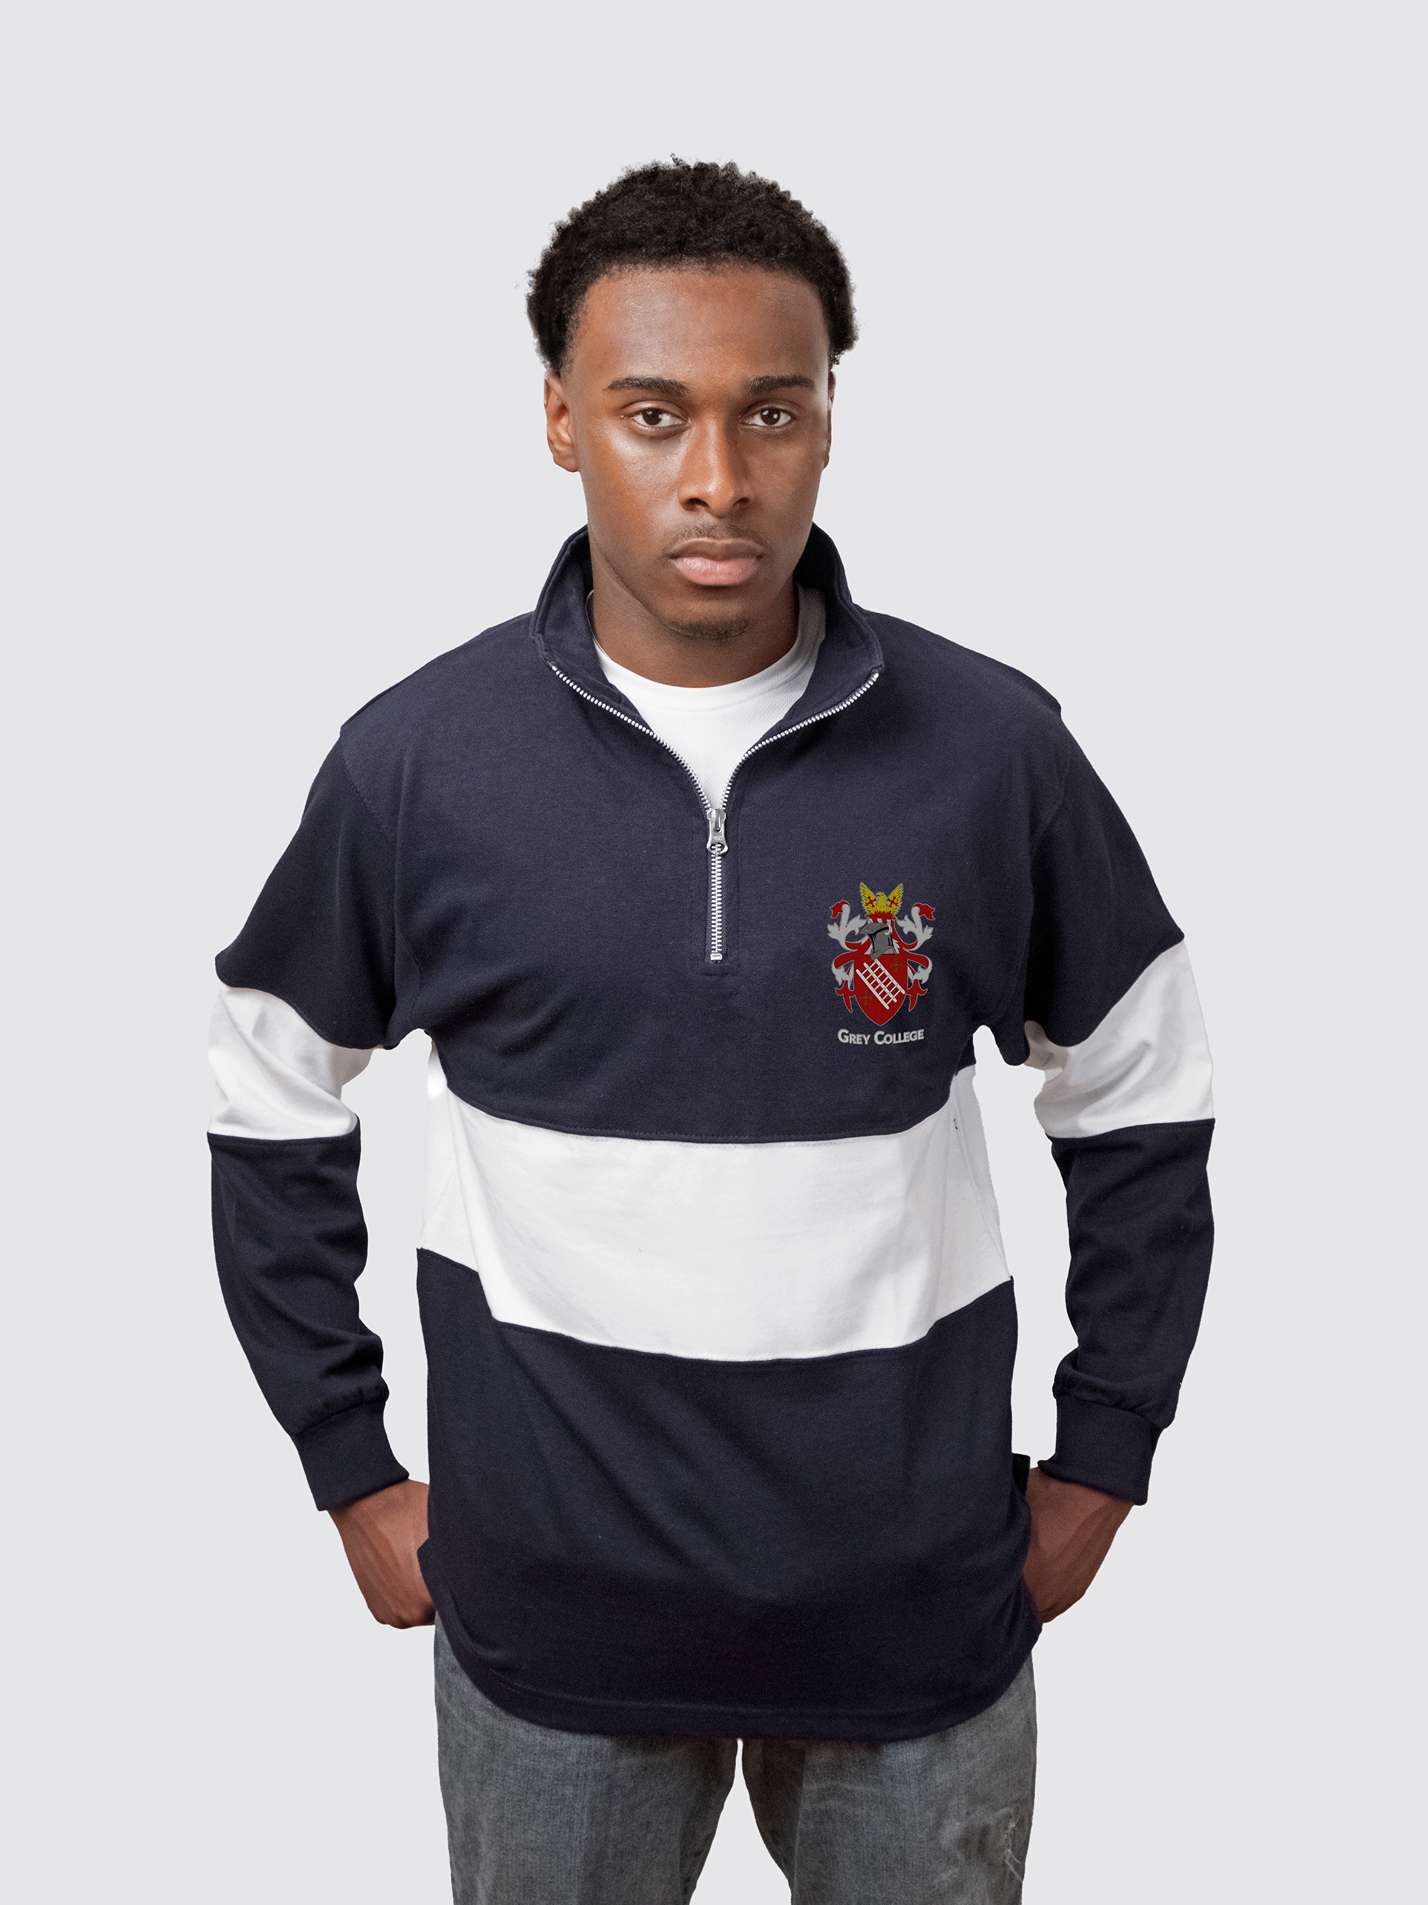 Grey College Durham Unisex Panelled 1/4 Zip Sweatshirt